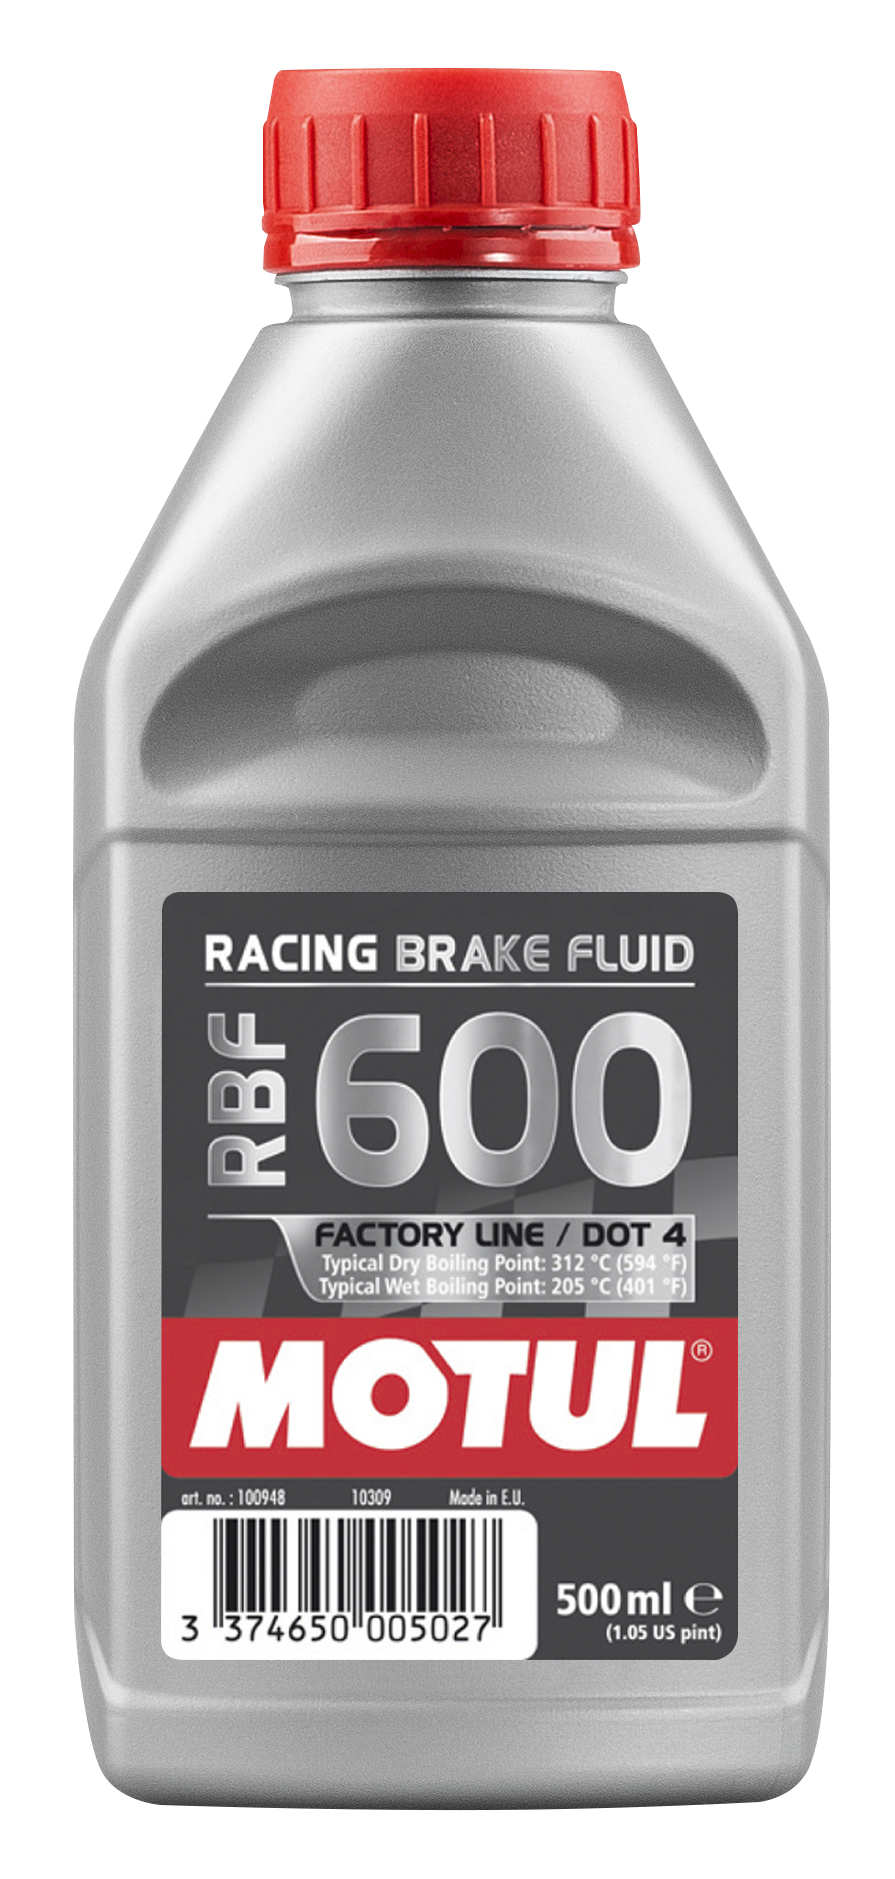 Motul RBF 600 Brake Fluid